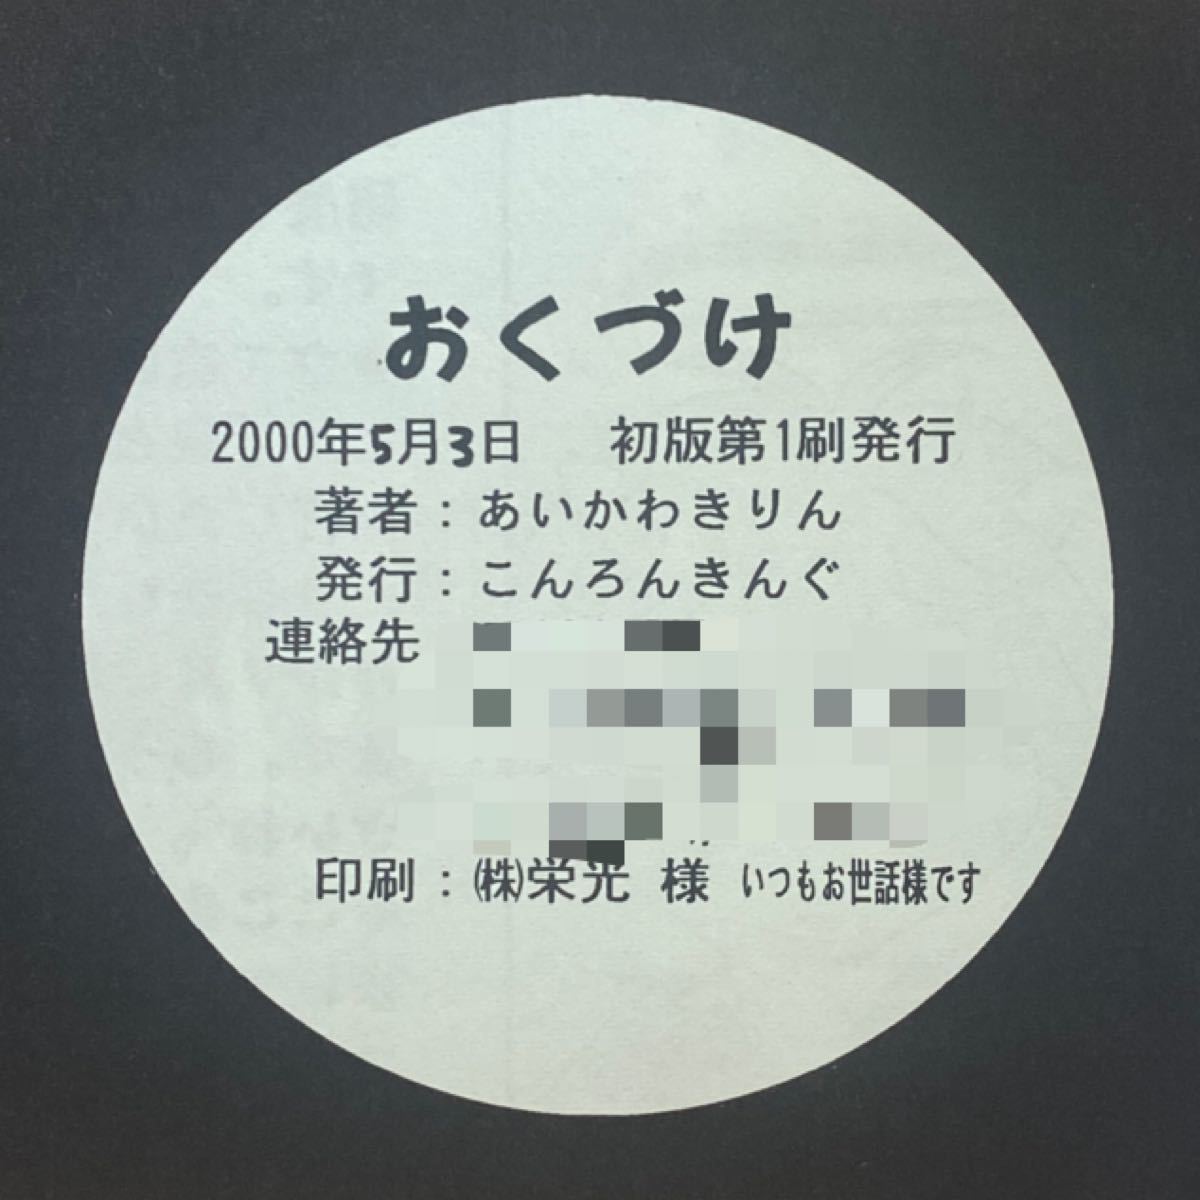 同人誌 封神演義 2000年5月3日 発行 あいかわきりん こんろんきんぐ 哀川貴林 